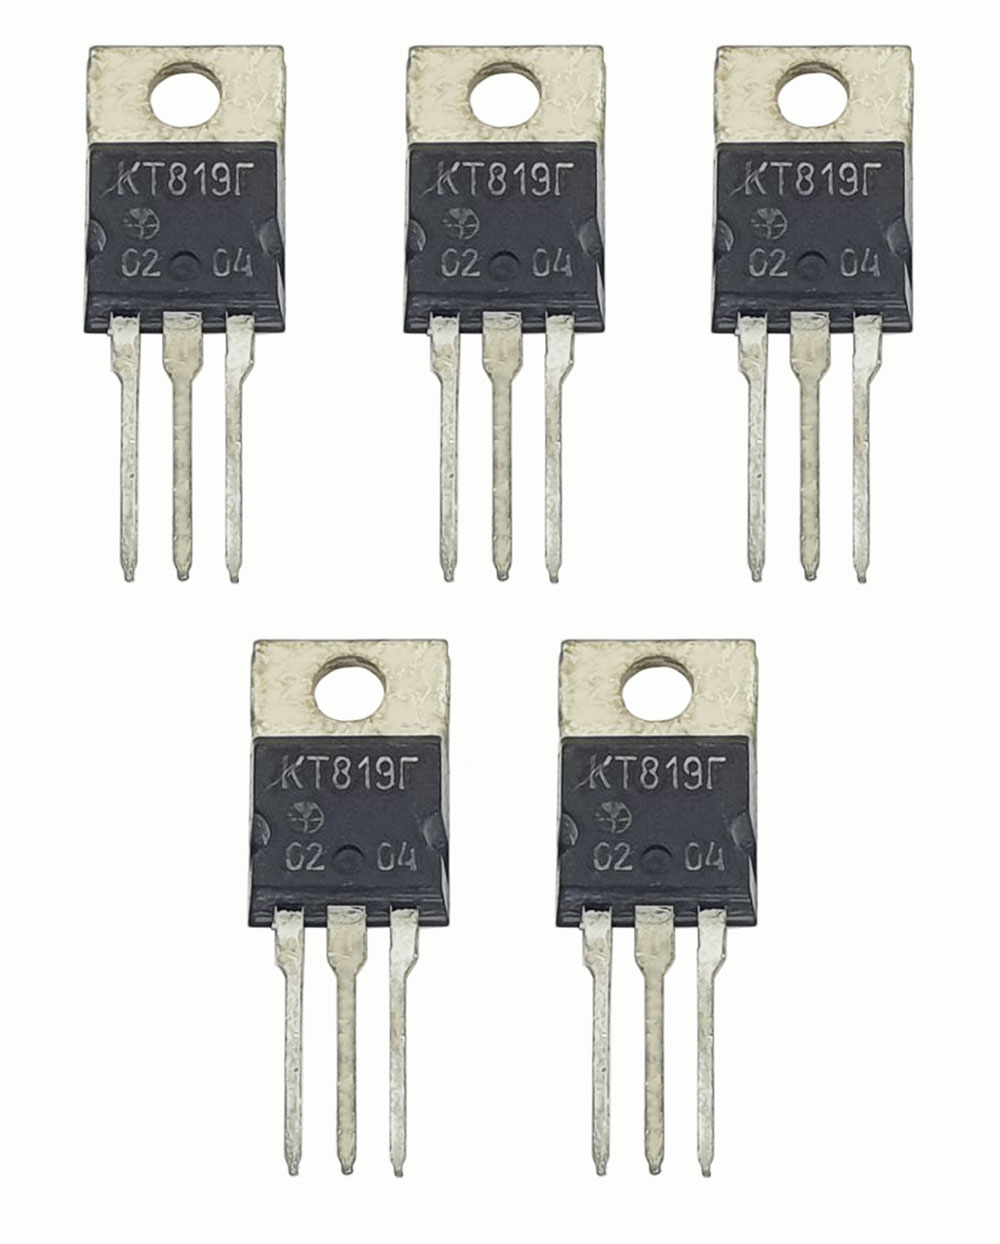 Транзистор КТ819Г, 5 штук / Аналоги: 2Т819Г, 2N5496, 2N6101, 2N6131, 2N6292 / n-p-n